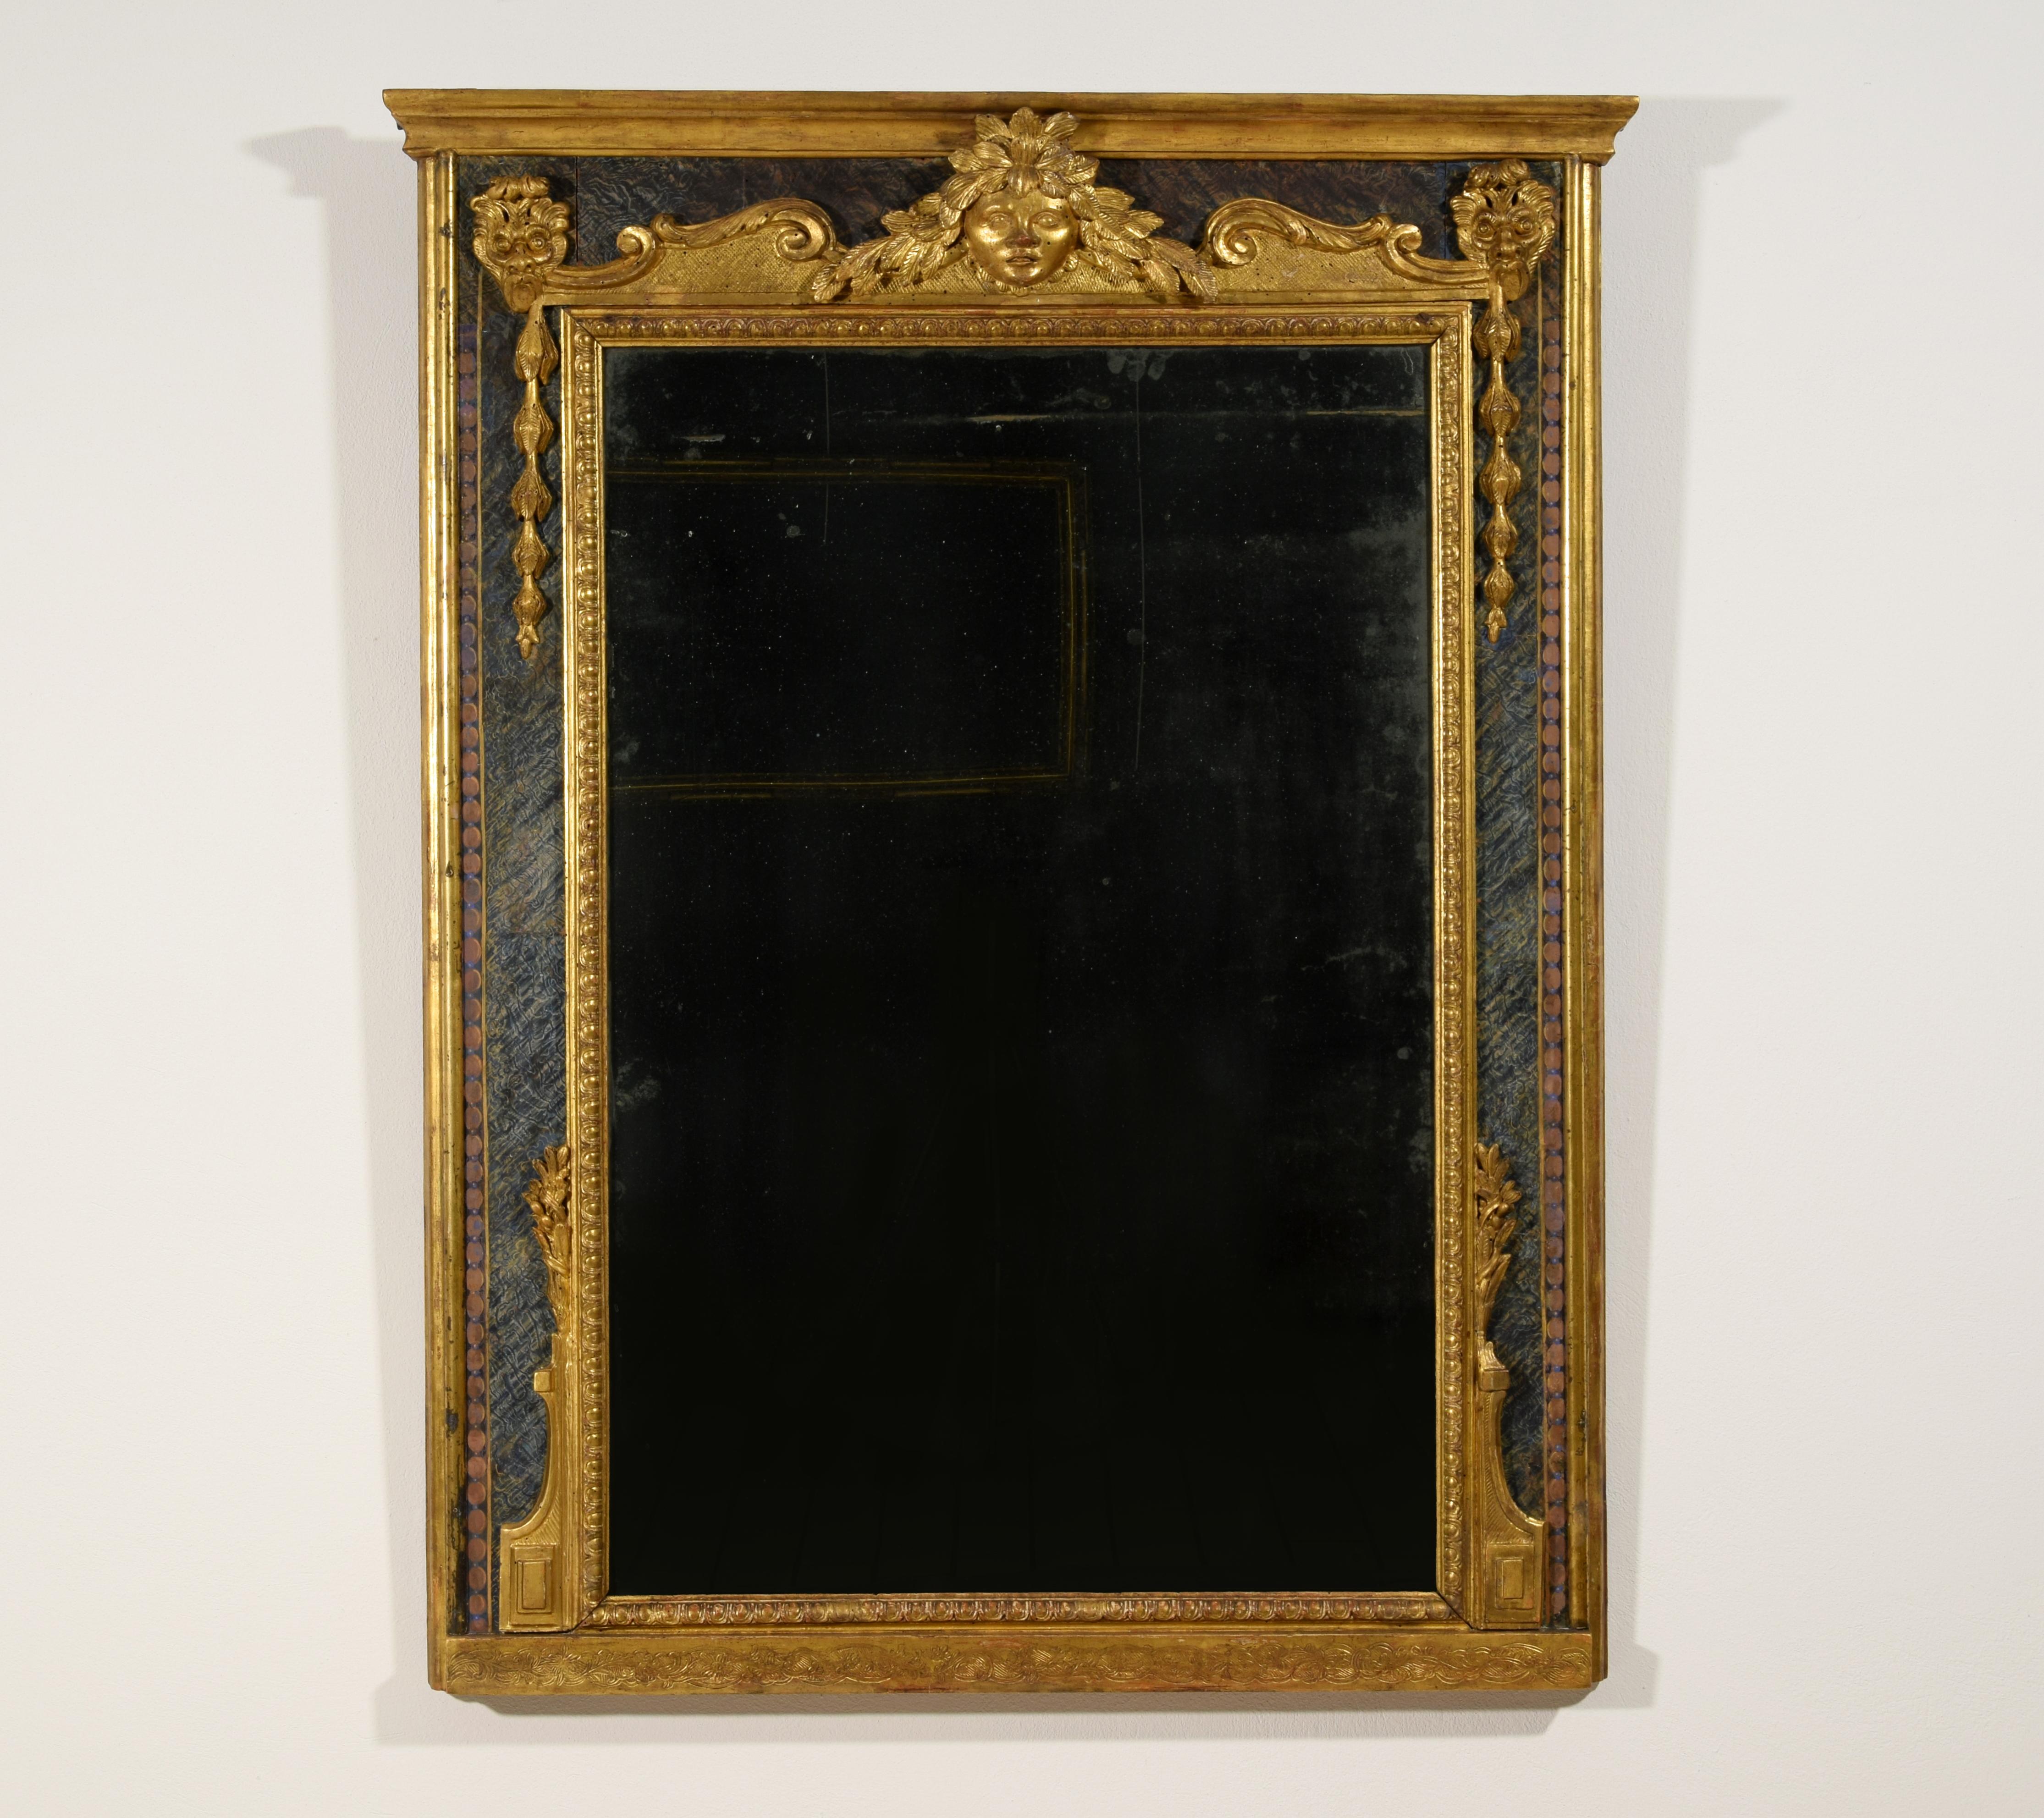 18ème siècle, Miroir italien Louis XIV en bois doré sculpté
Ce miroir baroque, fabriqué en Italie dans la première moitié du XVIIIe siècle, possède un cadre rectangulaire en bois sculpté et doré. Le cadre intérieur qui entoure le miroir est sculpté